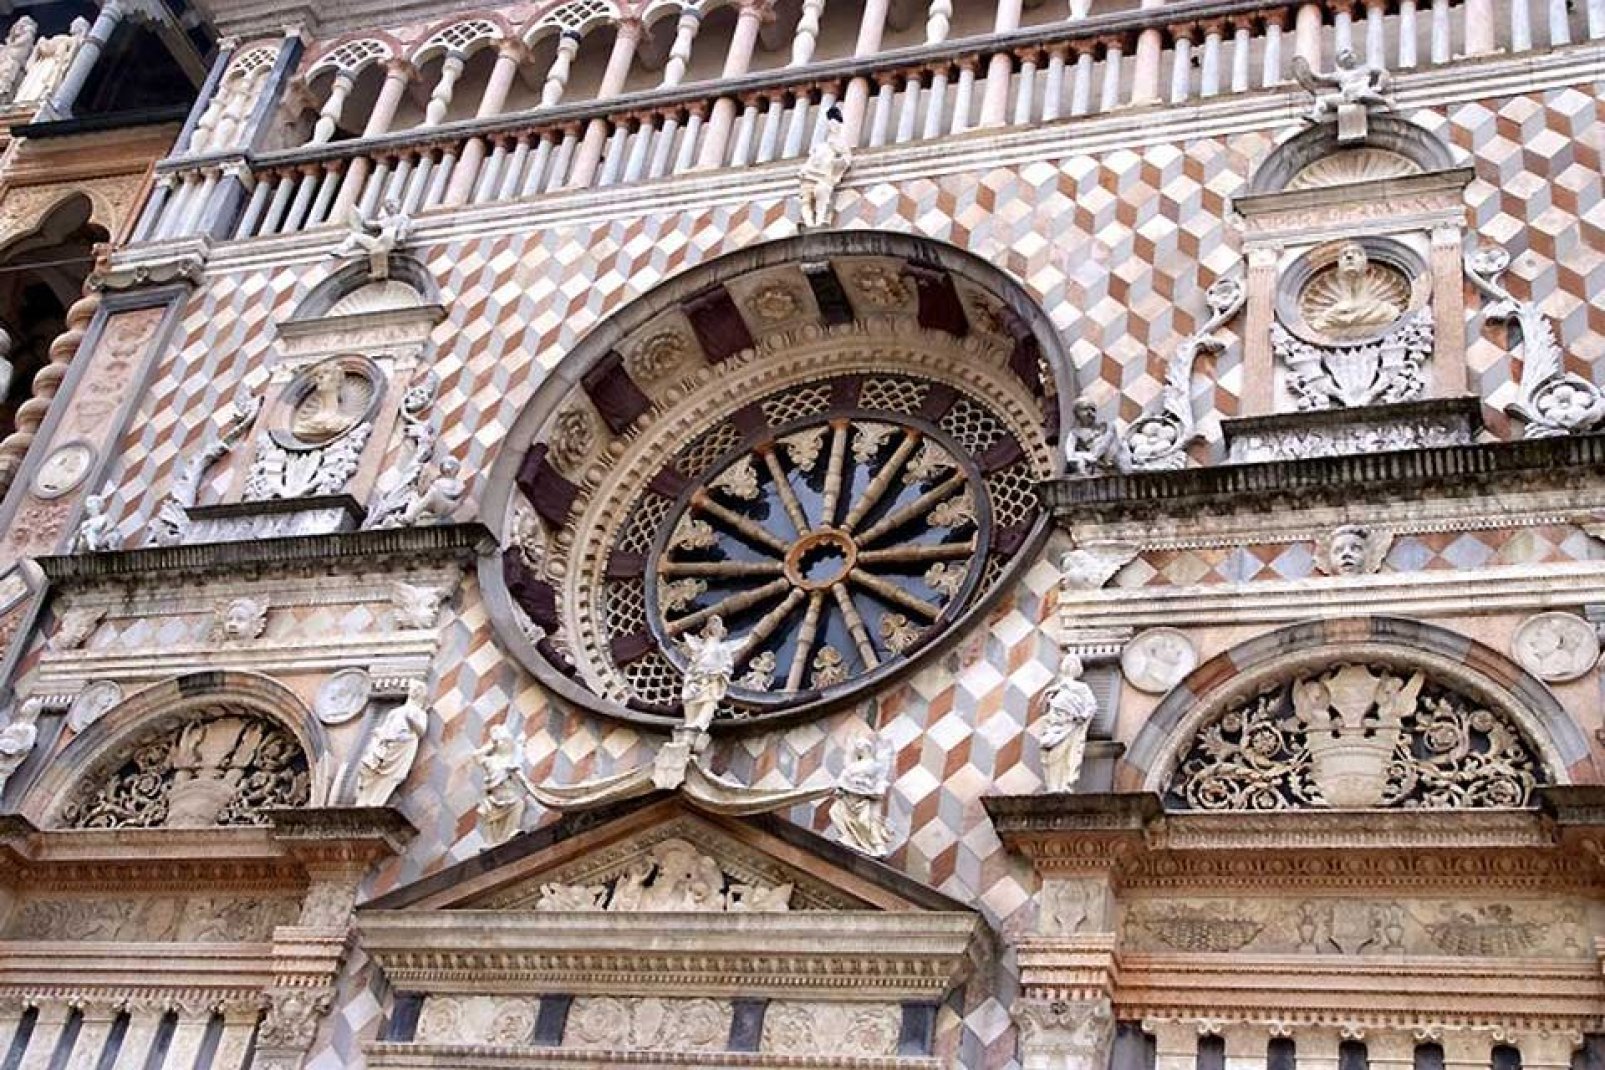 La rinascimentale Cappella Colleoni, addossata alla basilica  di Santa Maria Maggiore, fu fatta costruire da Bartolomeo Colleoni come mausoleo per sè e per la figlia